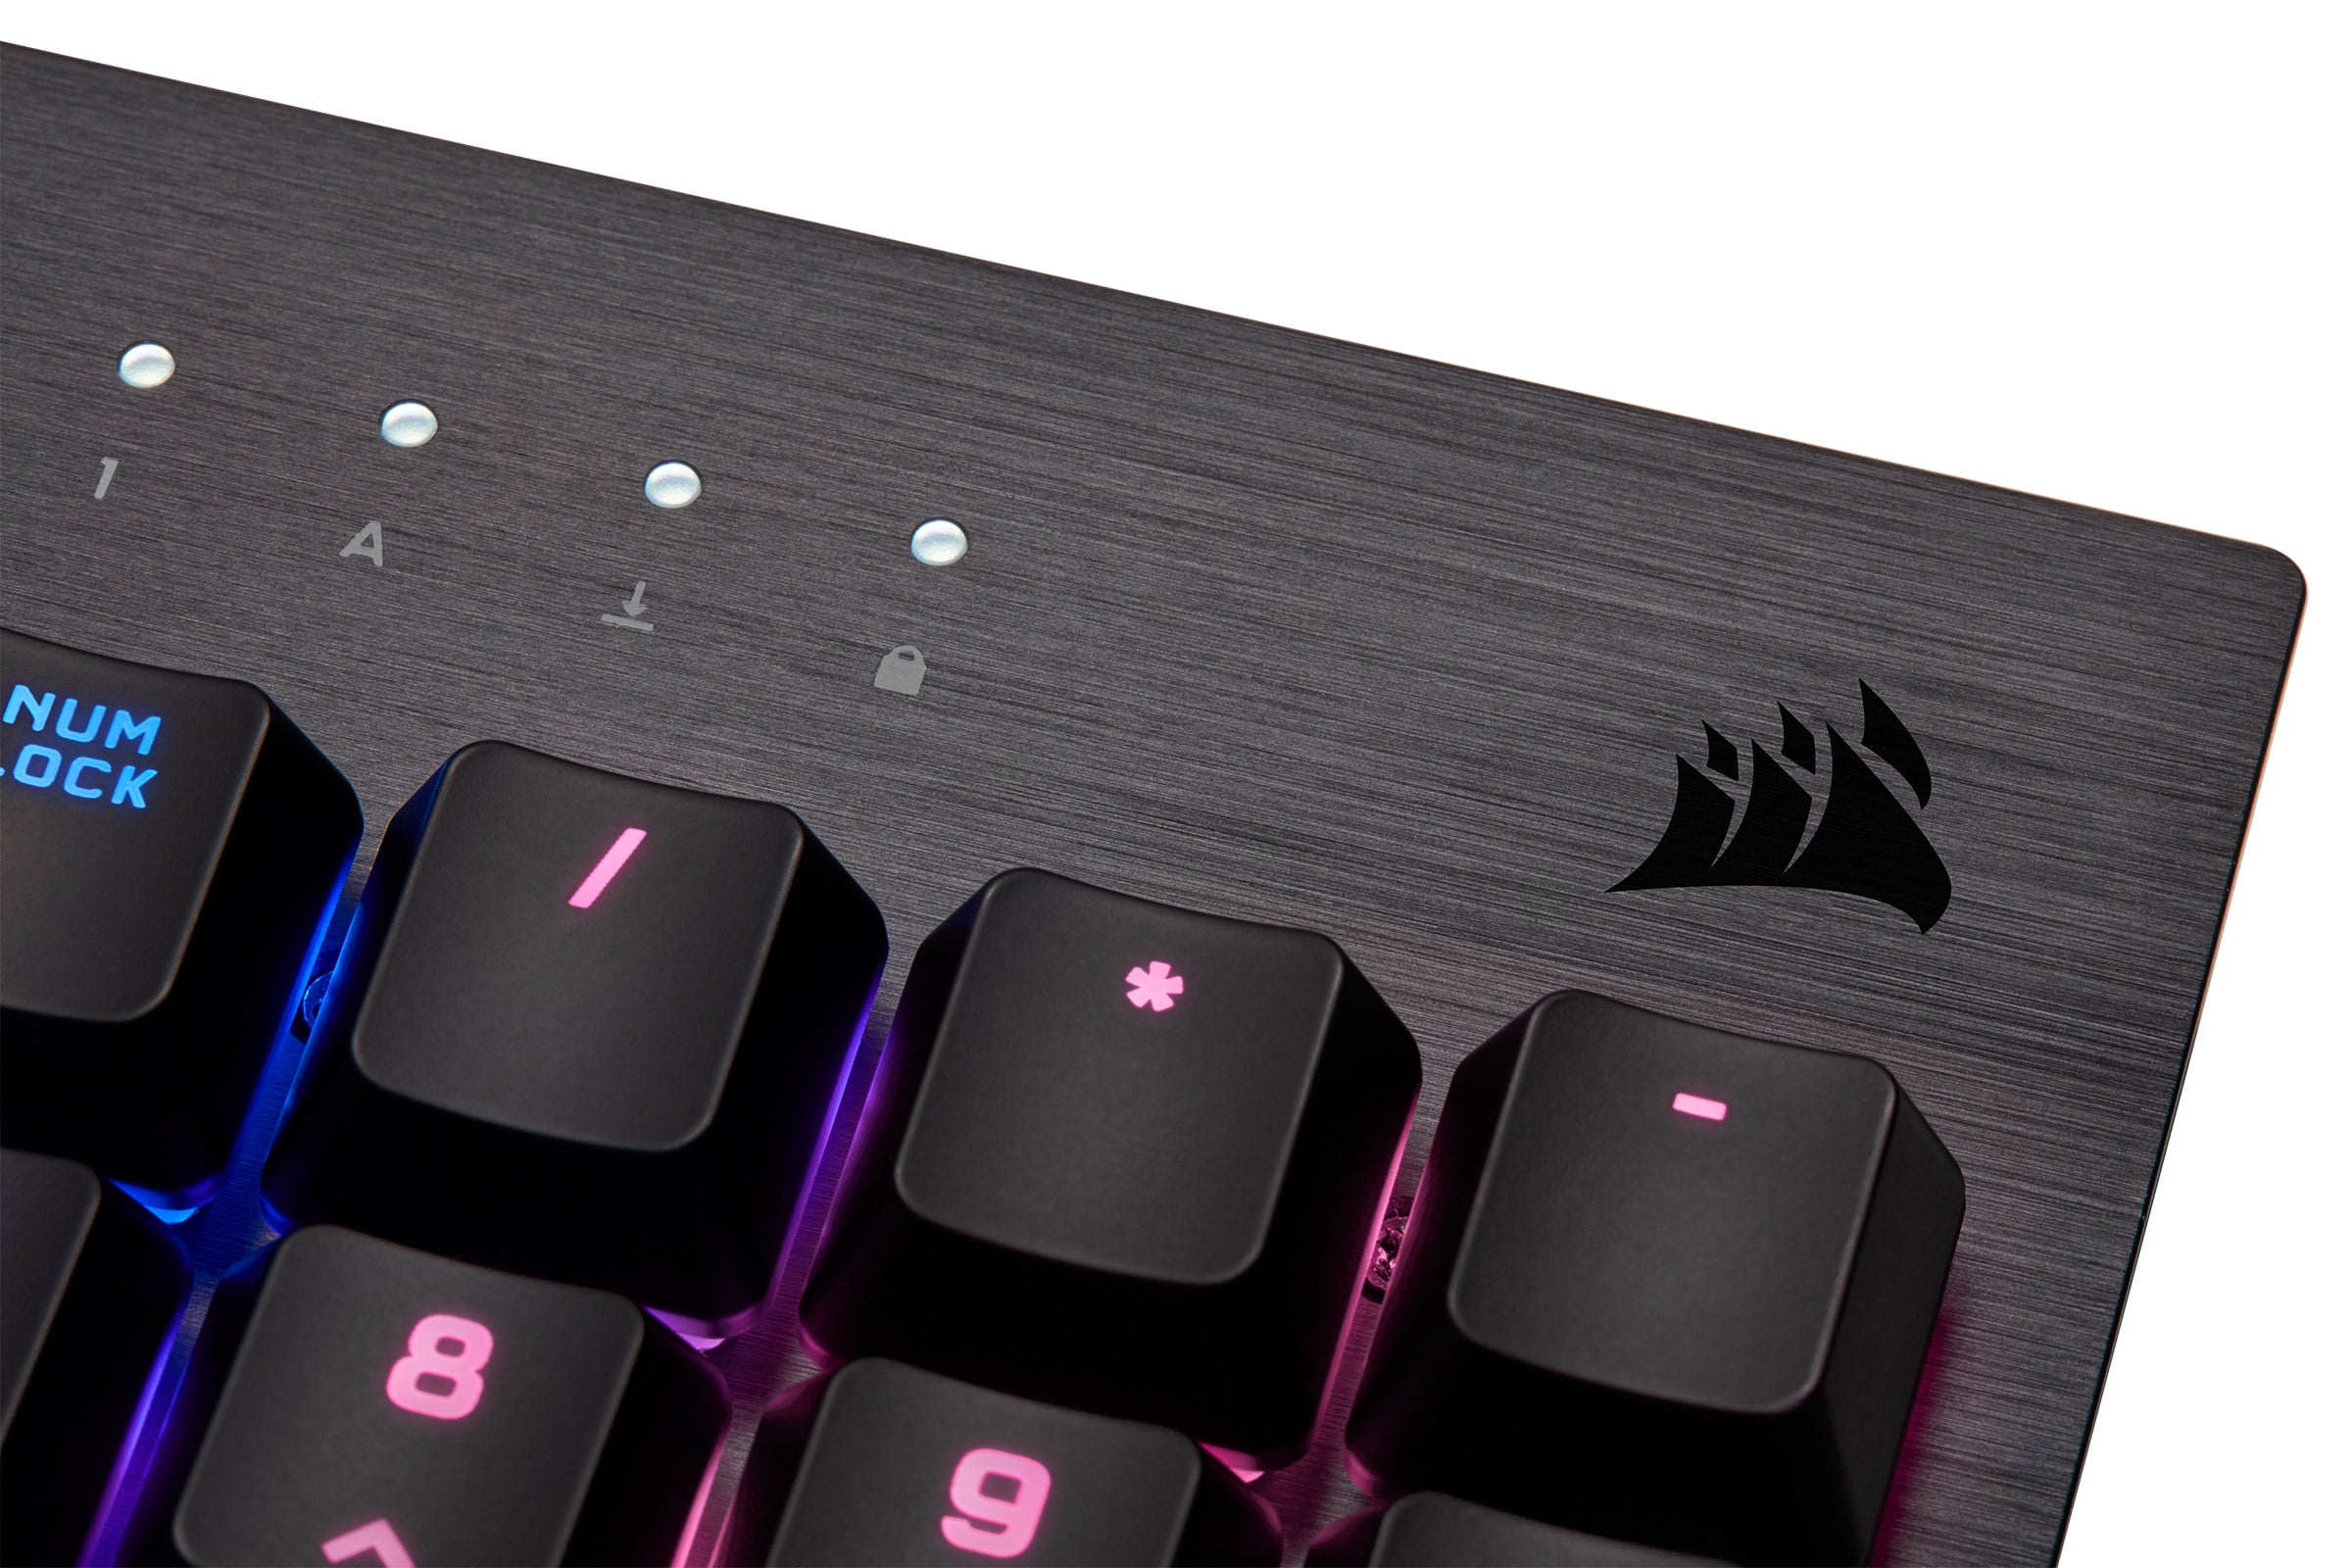 Le clavier mécanique Corsair K60 RGB Low Profile en promo pour la Gaming  Week 